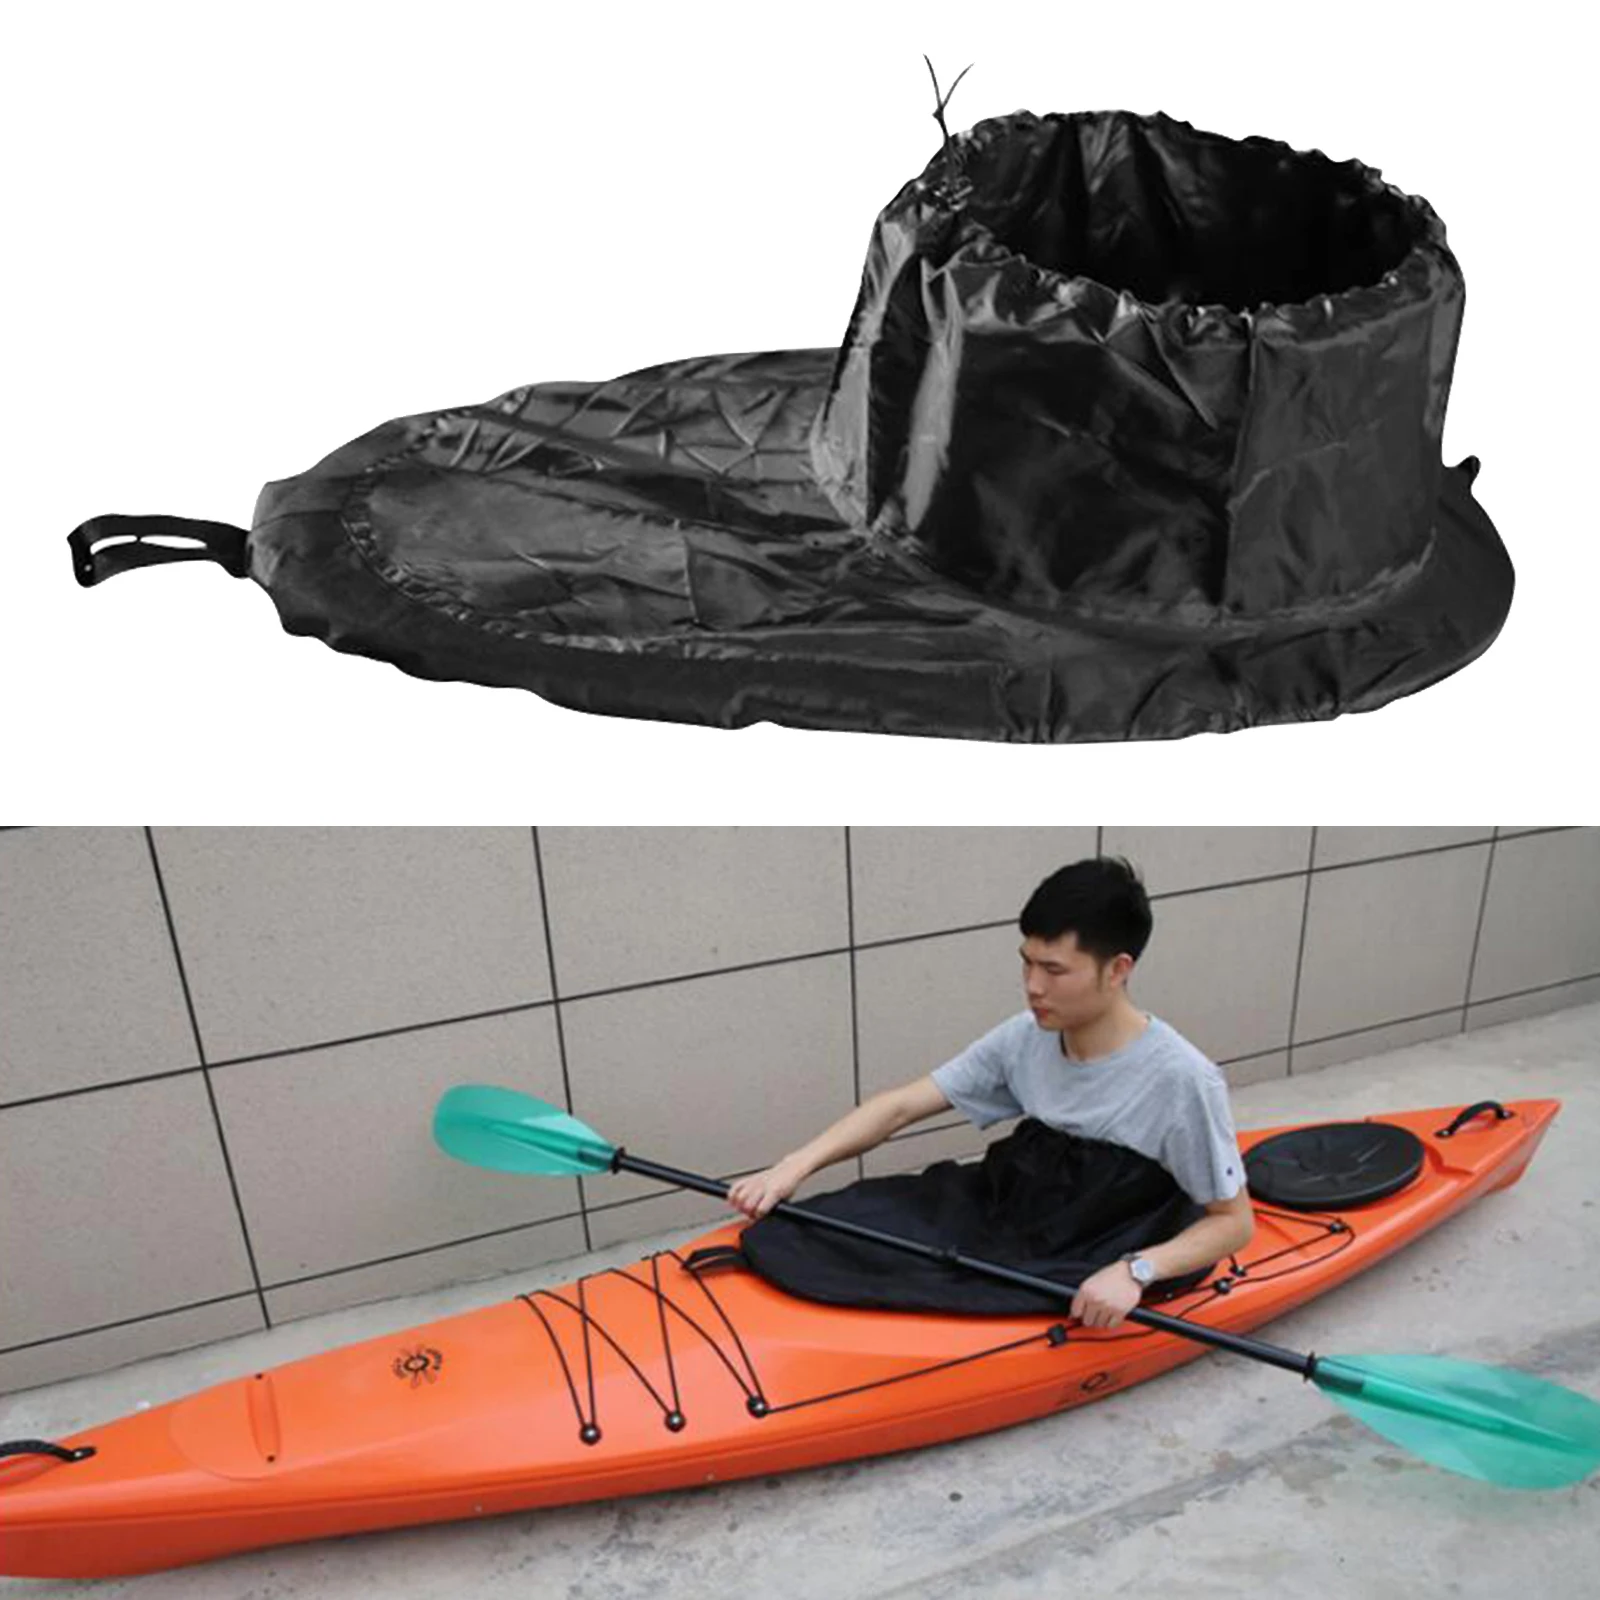 LIOOBO Kayak Spray Skirt Coprimaterasso Regolabile in Nylon Barca Canoa Coperchio della Cabina di Guida Coperchio della Copertura della Ginocchiera Accessorio Impermeabile per Kayak